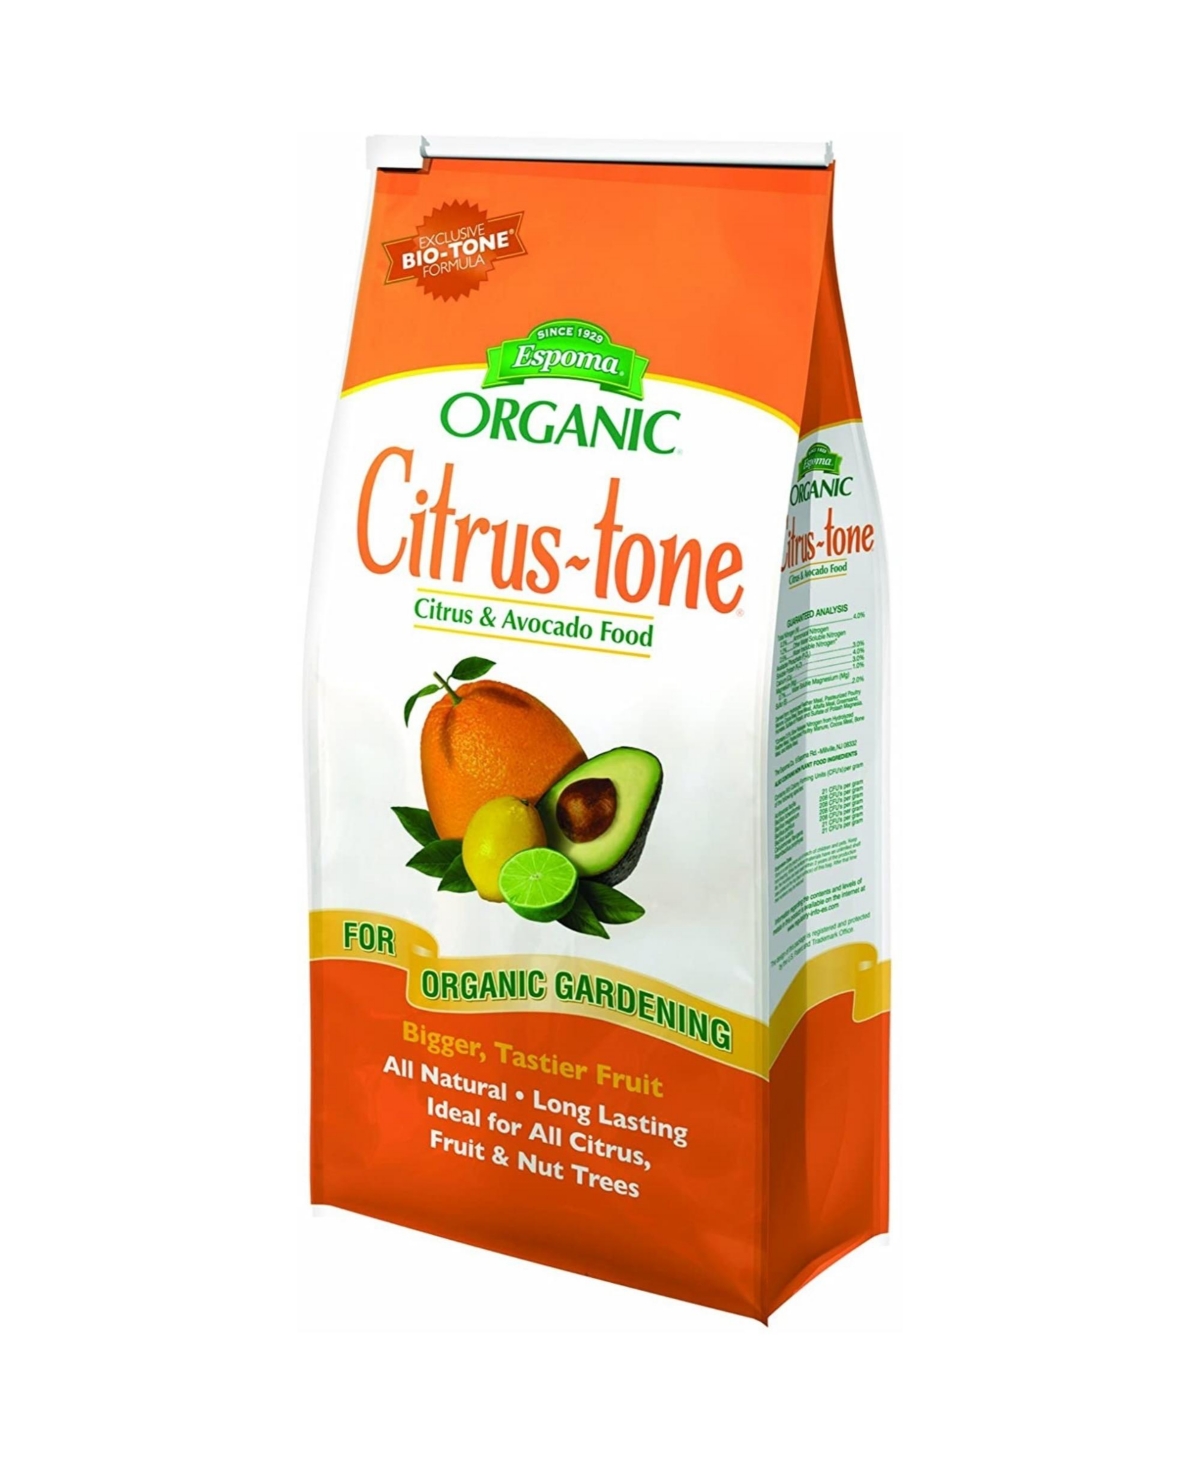 CT8 Citrus-tone Citrus Avocado Organic 5-2-6 - 8lb - Multi